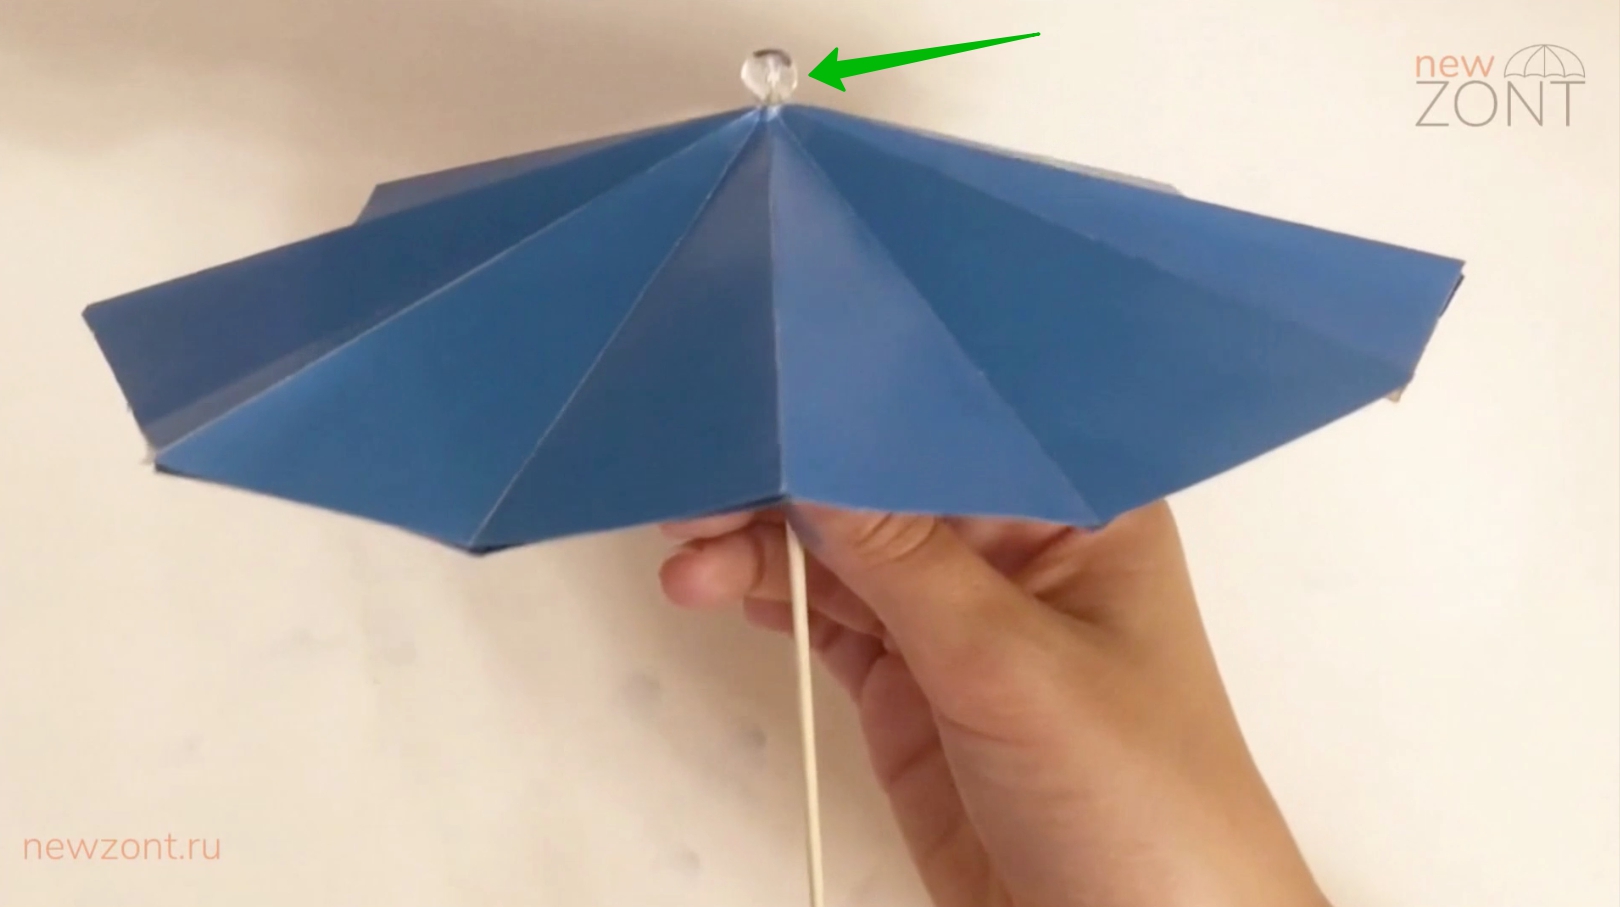 Китайский зонтик 雨伞 | VK